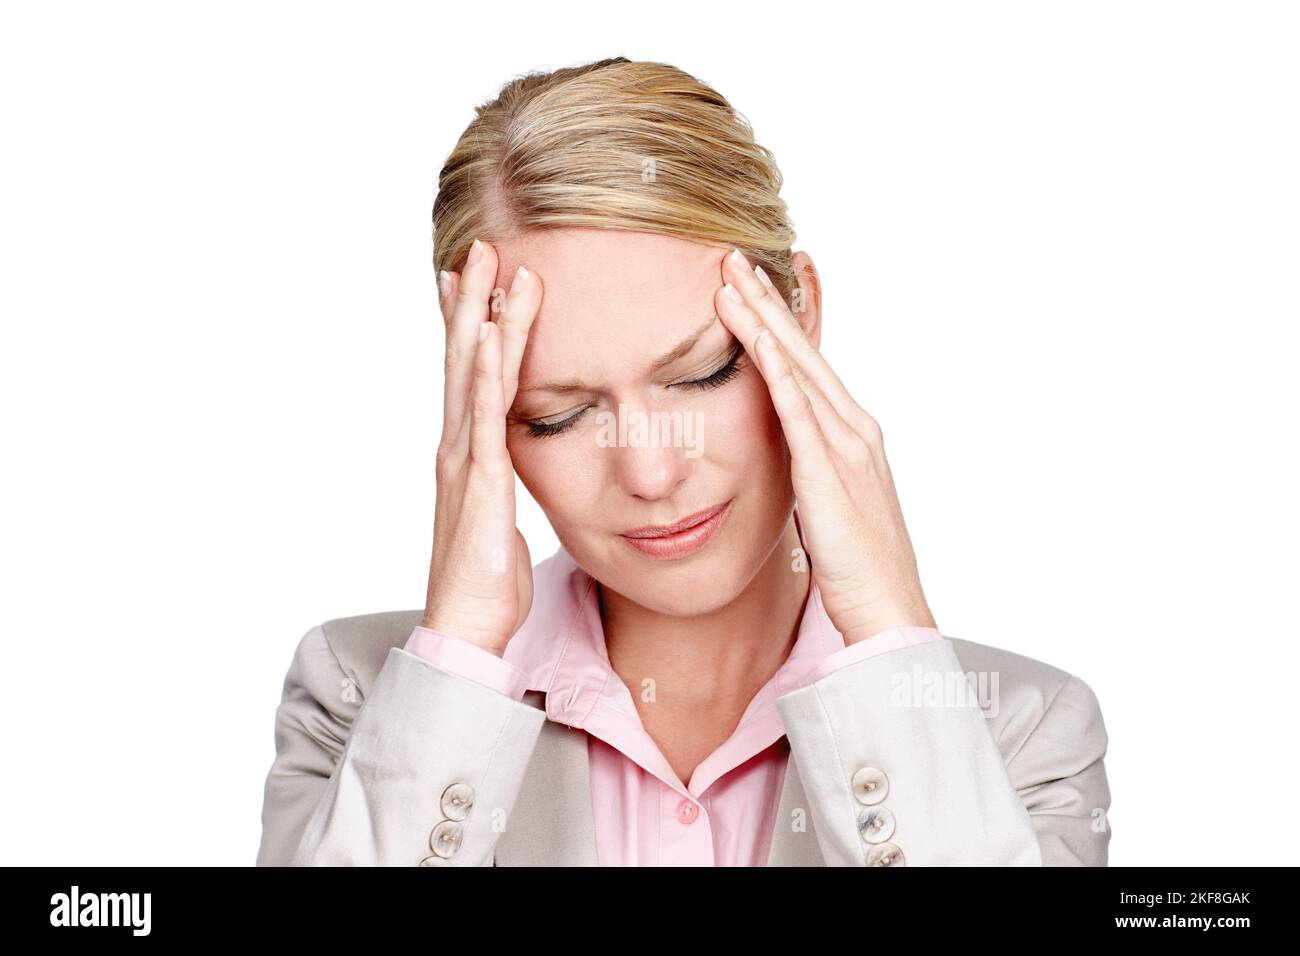 Le stress fait son tribut. Photo en studio d'une femme d'affaires qui a l'air stressée sur fond blanc. Banque D'Images